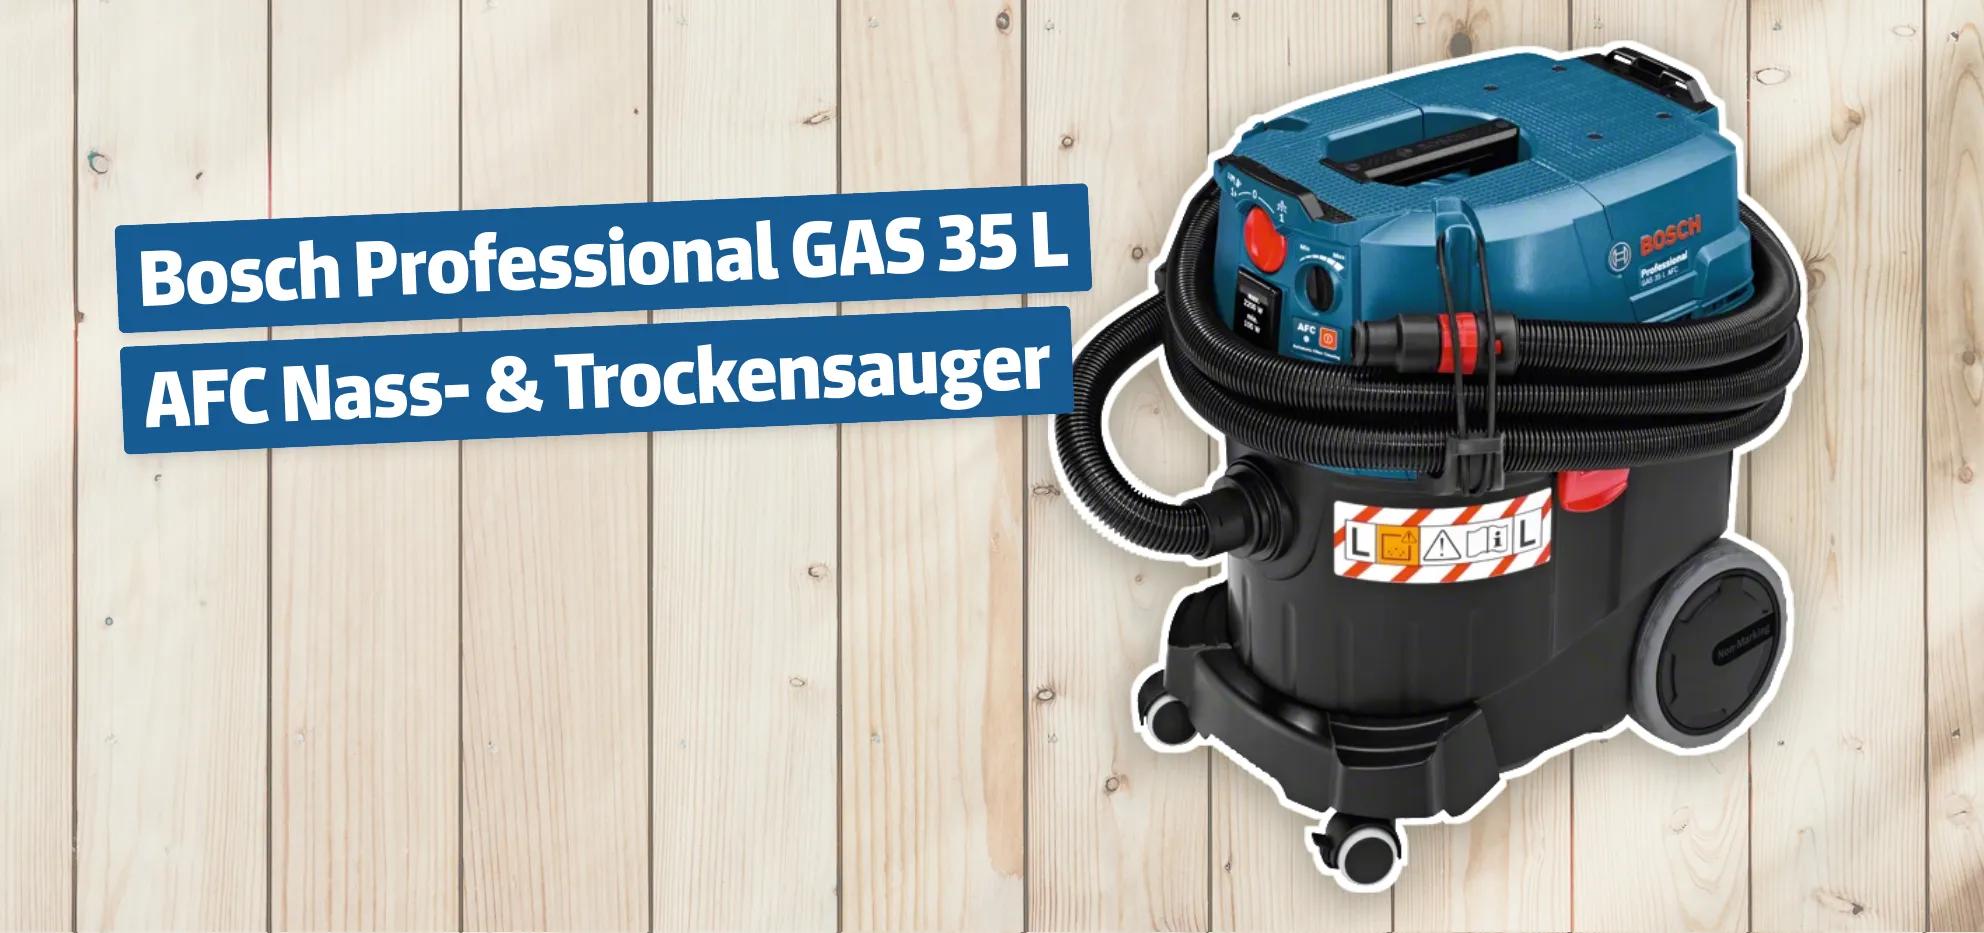 Bosch Professional GAS 35 L AFC Nass- & Trockensauger